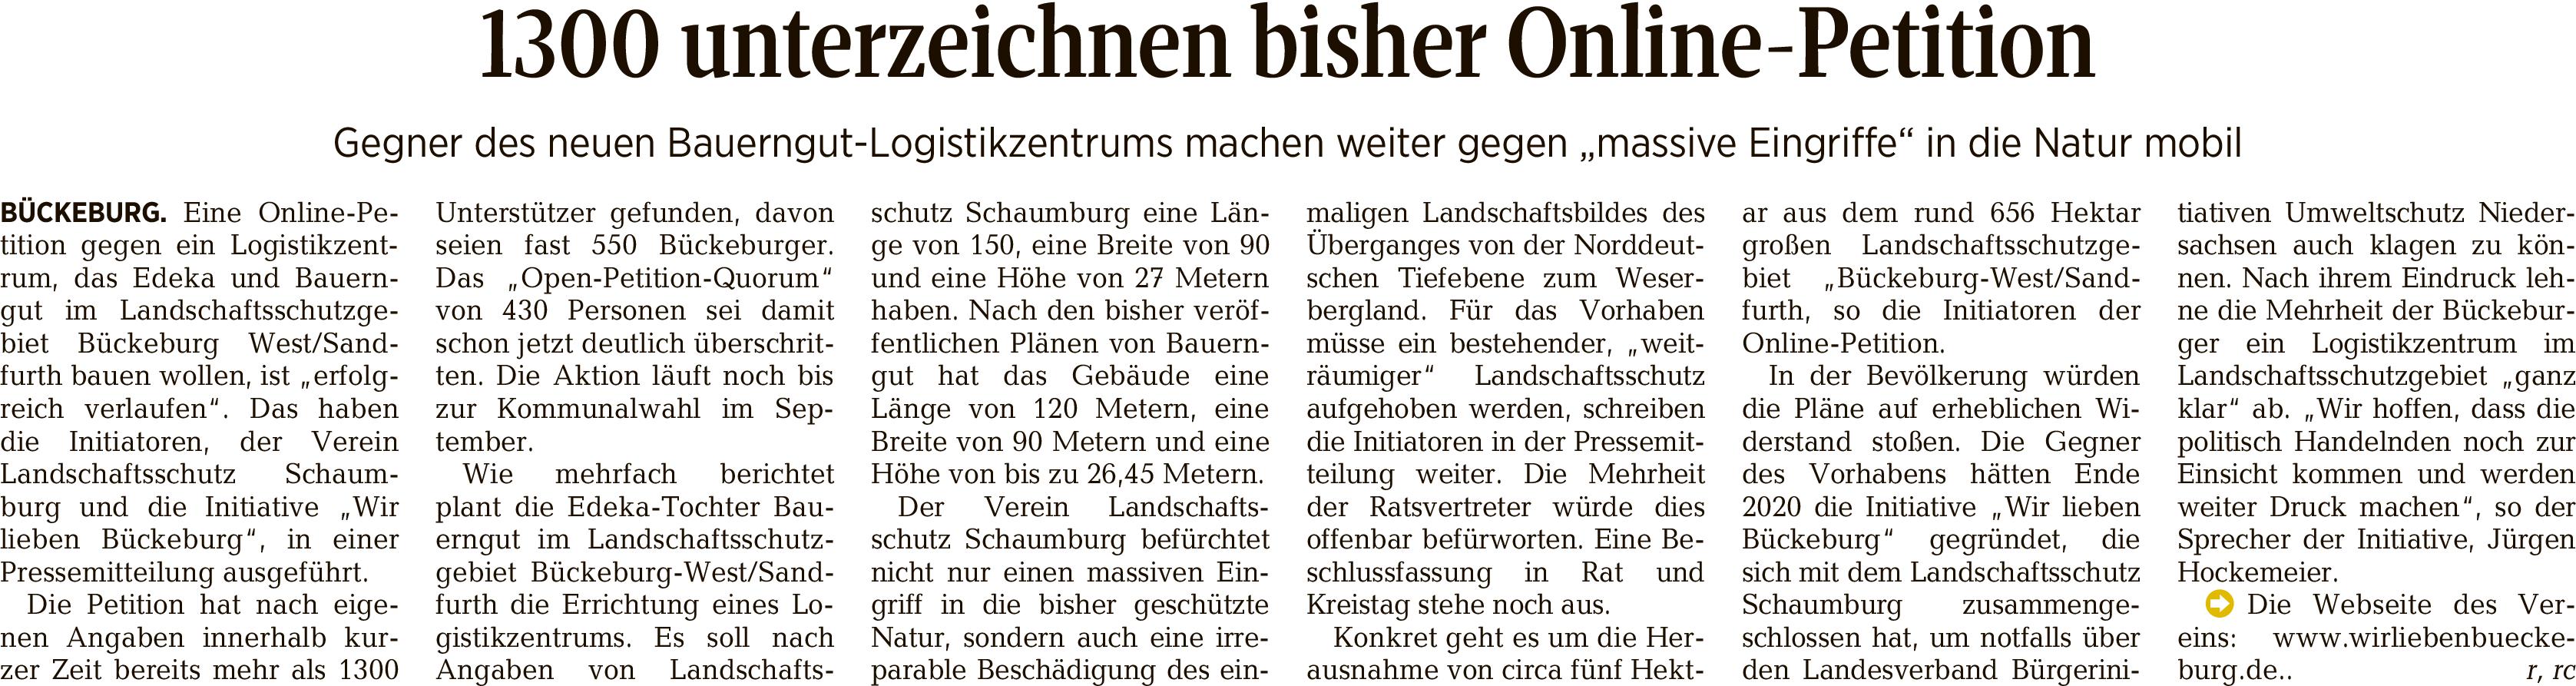 Tageszeitung 2016 150158   Schaumburger Nachrichten 01072021 b petition2906b 001